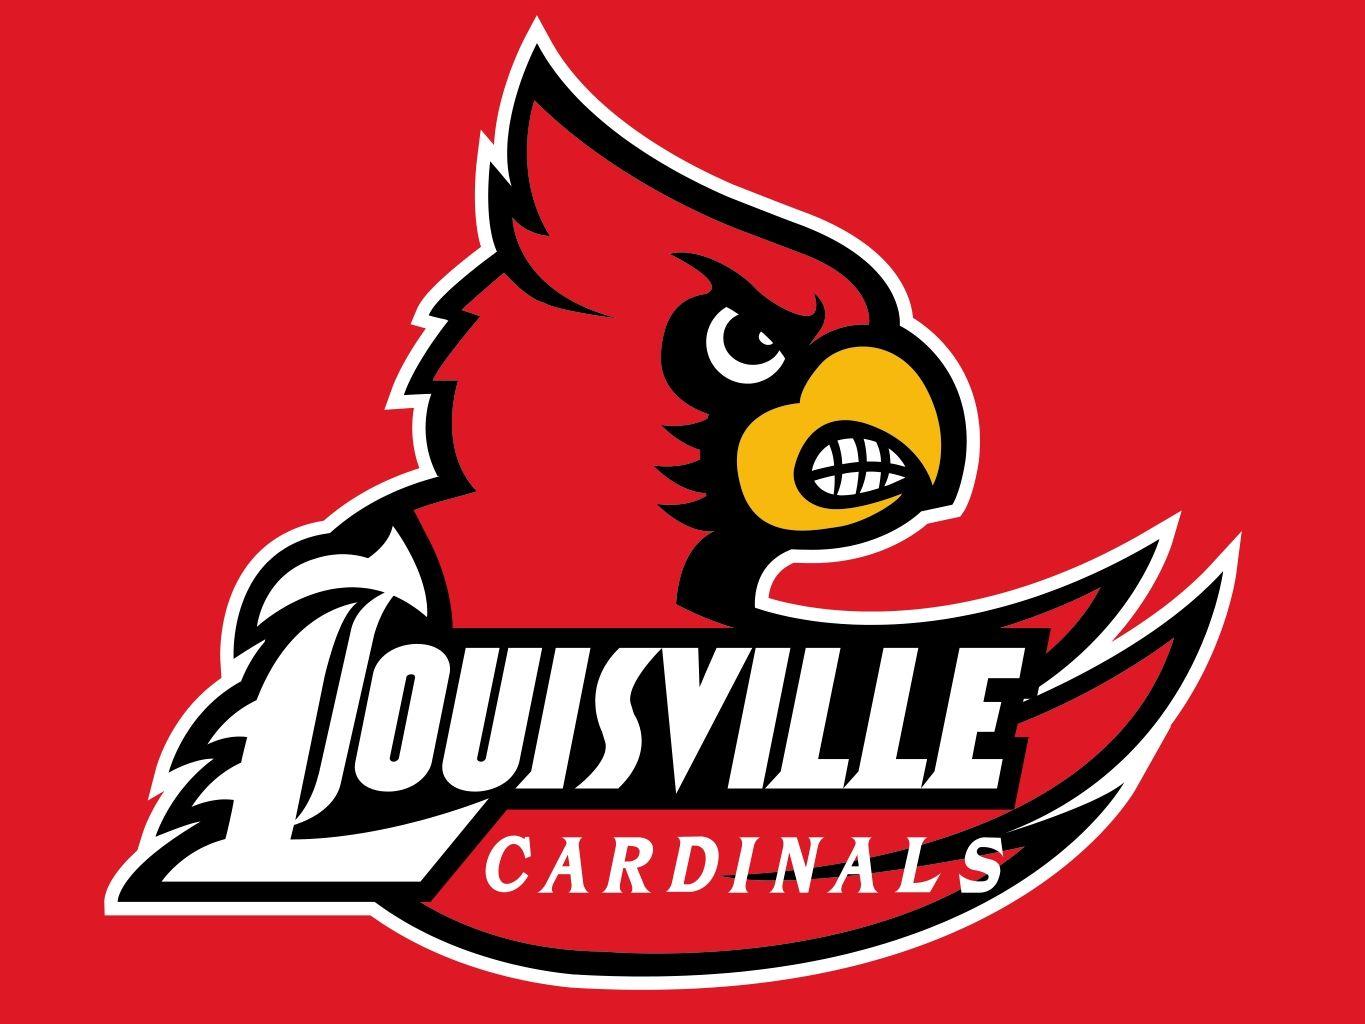 U of L Cardinal Logo - Louisville Cardinals - UK Alumni Association Atlanta